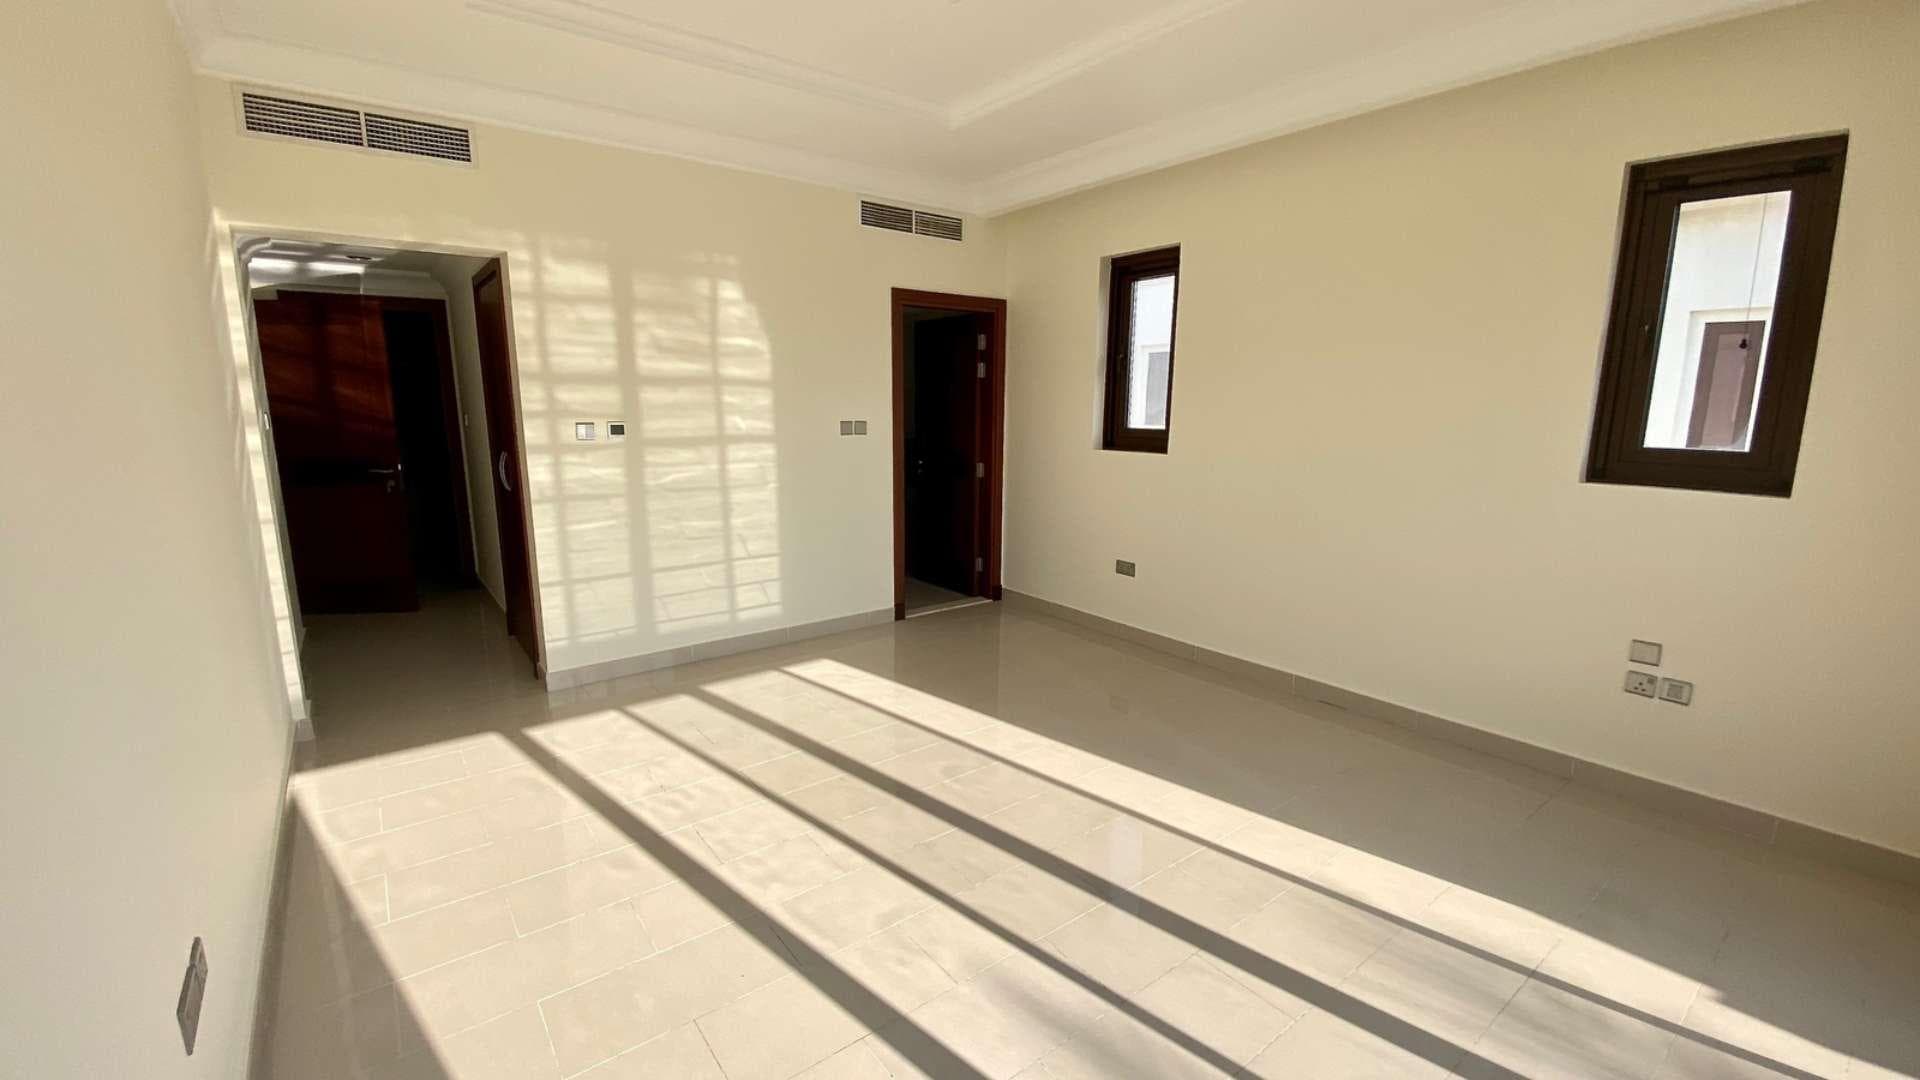 6 Bedroom Villa For Sale Aseel Lp37478 1fbeef8f8dbd4600.jpg